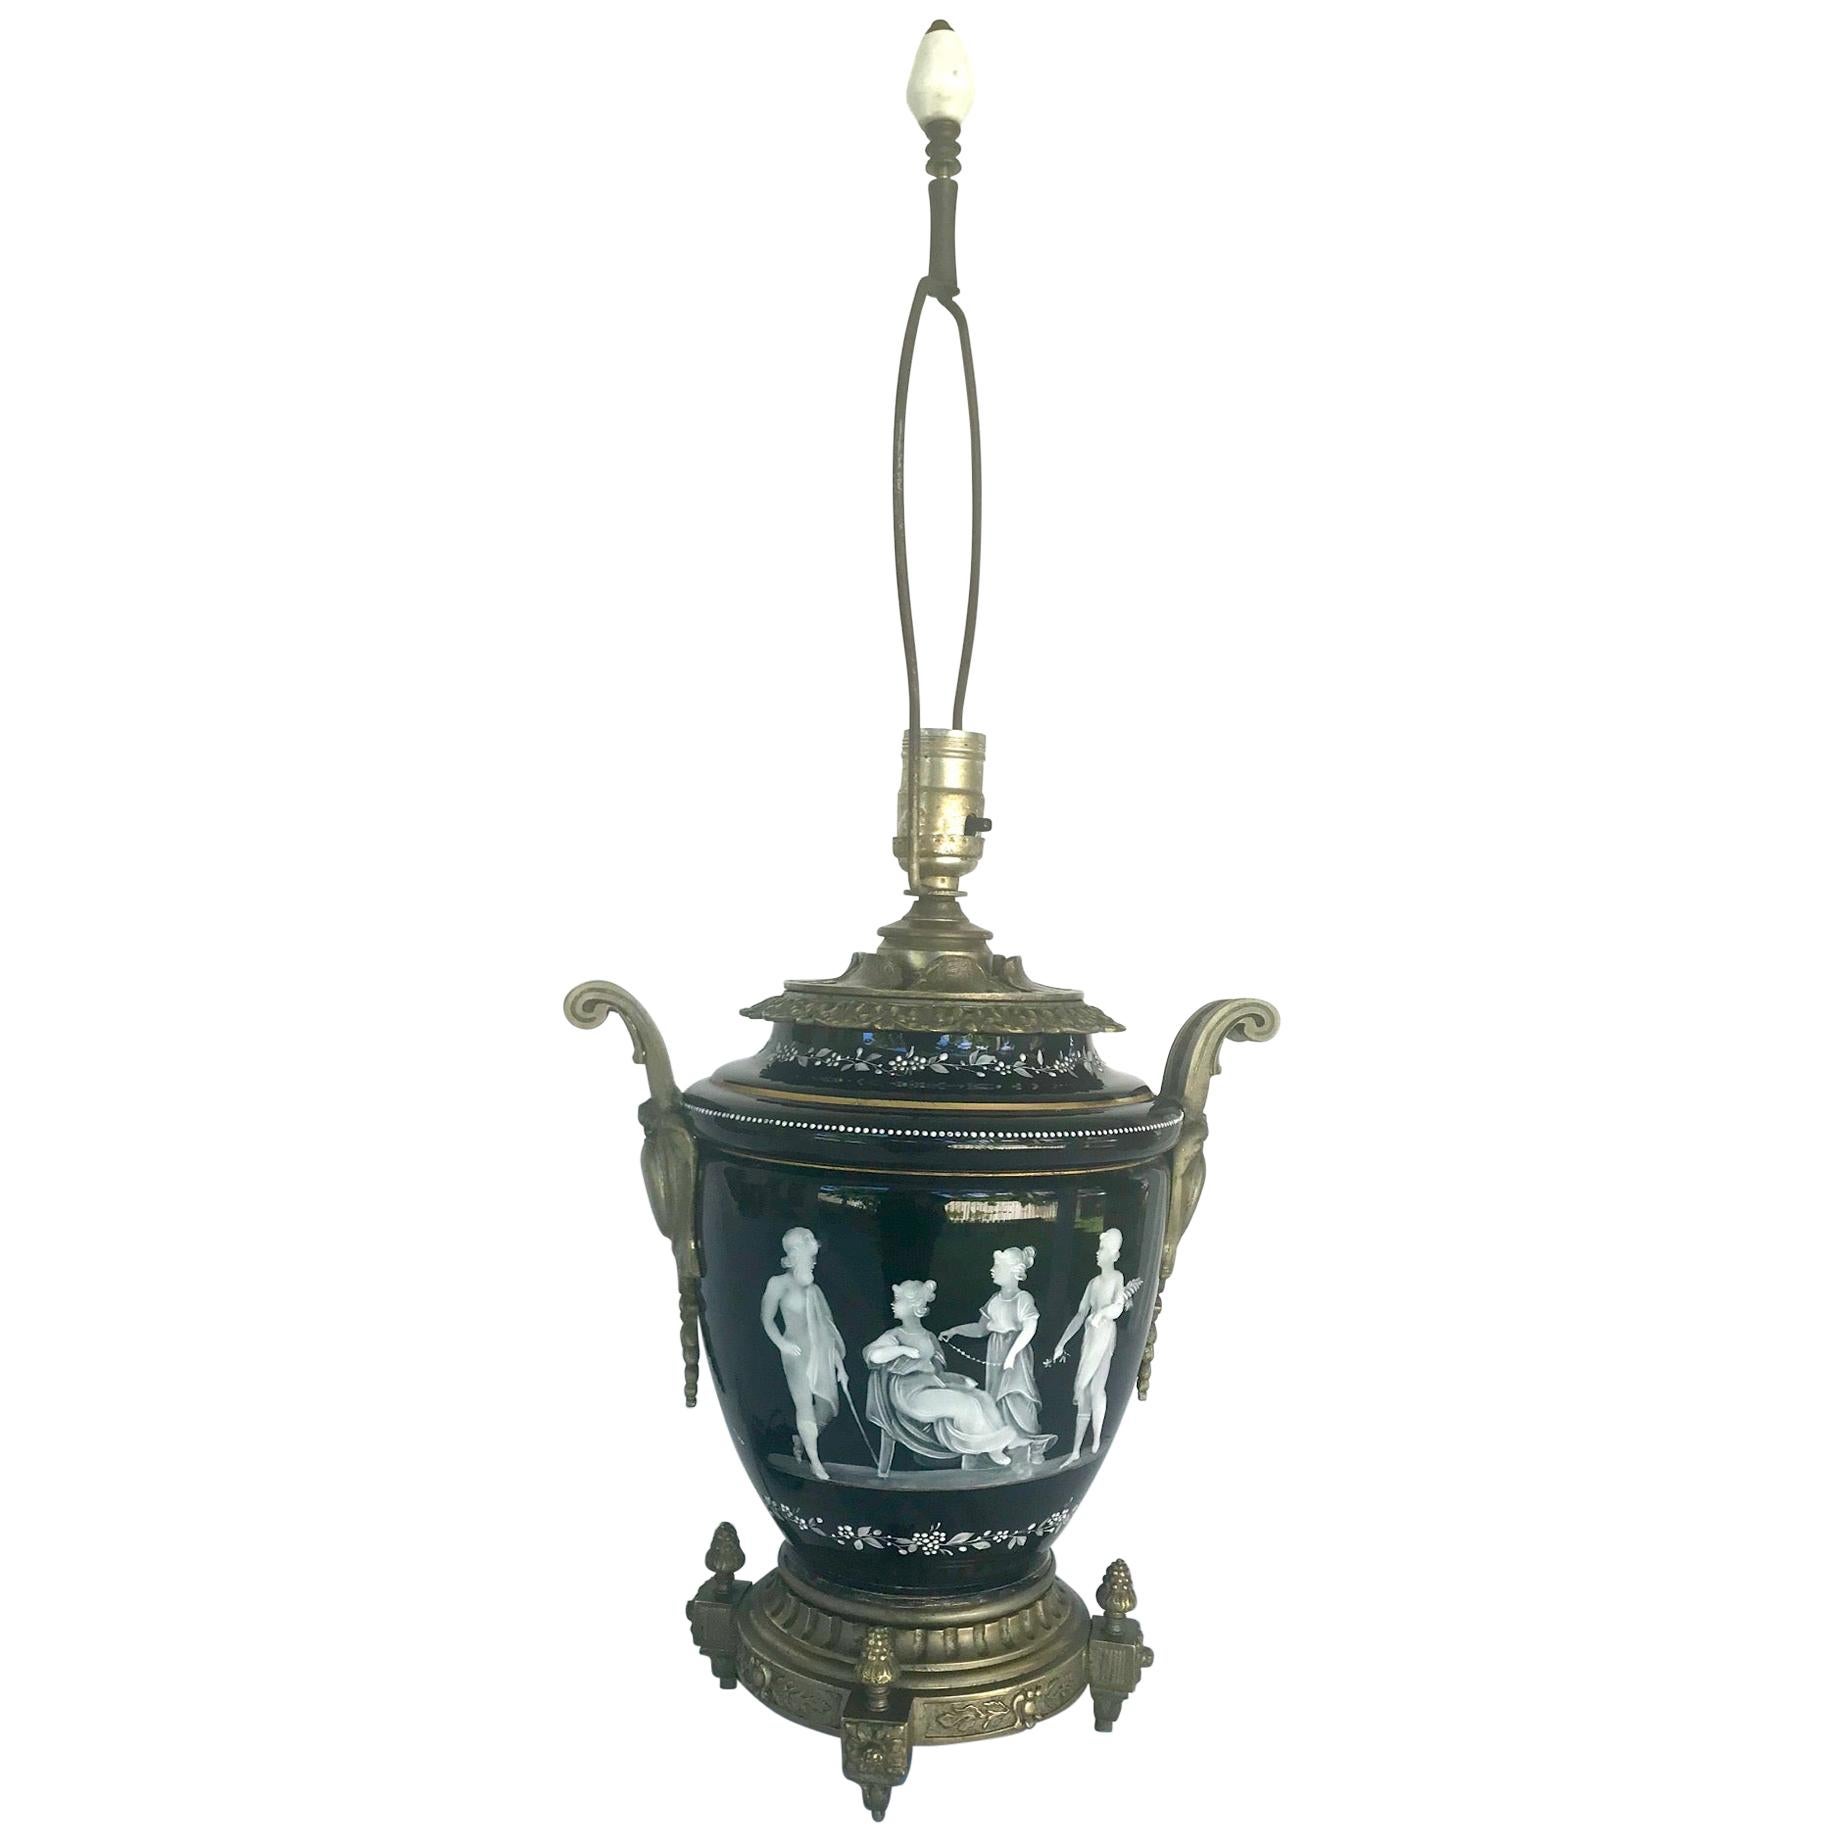 Porzellan-Tischlampe mit Bronzebeschlägen, Pete-Sur-Pate-Muster